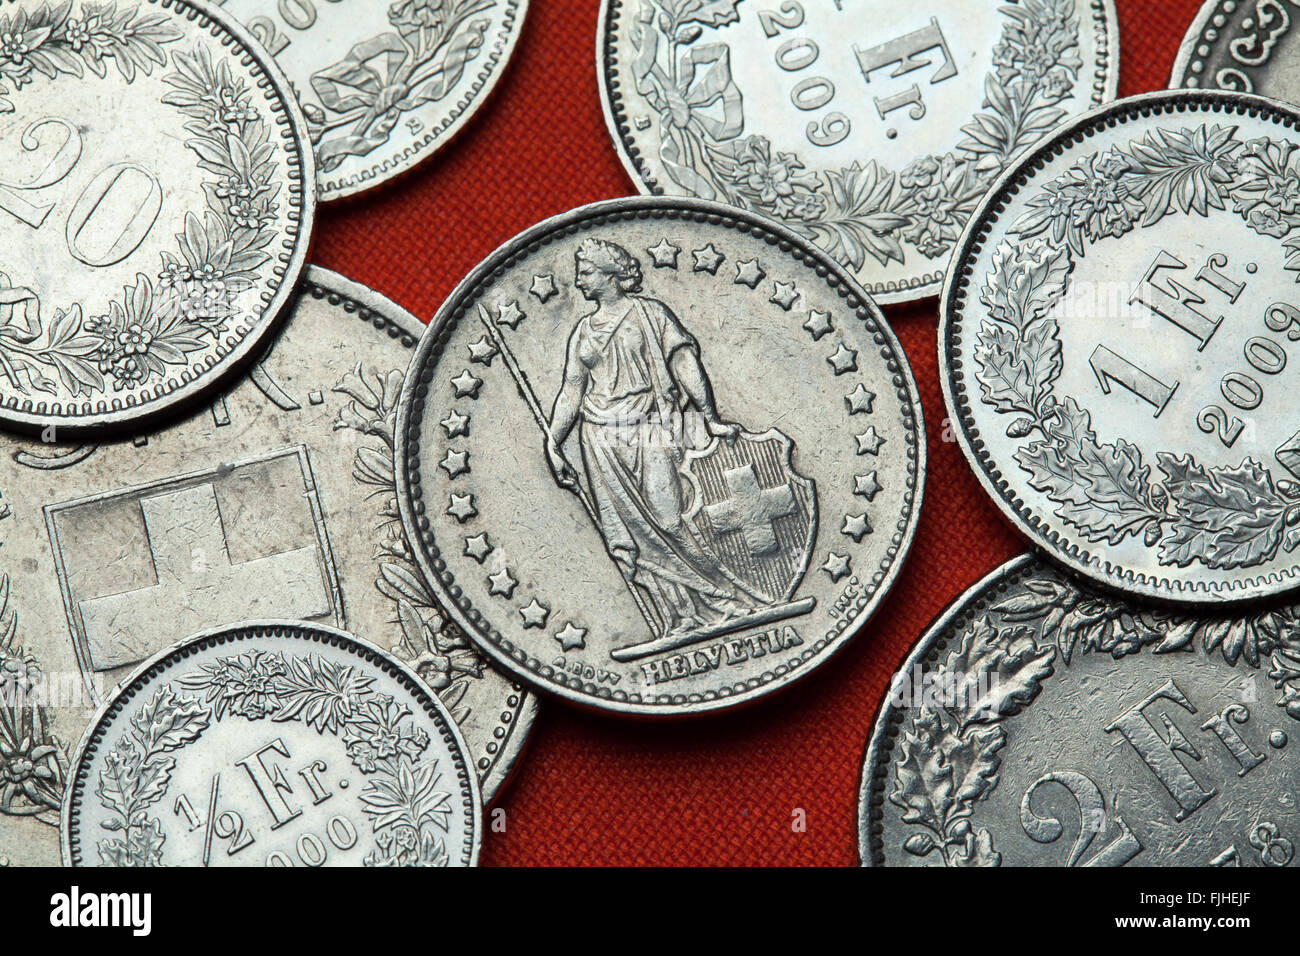 Münzen der Schweiz. Stehende Helvetia in der Schweiz einen Franc-Münze  abgebildet Stockfotografie - Alamy